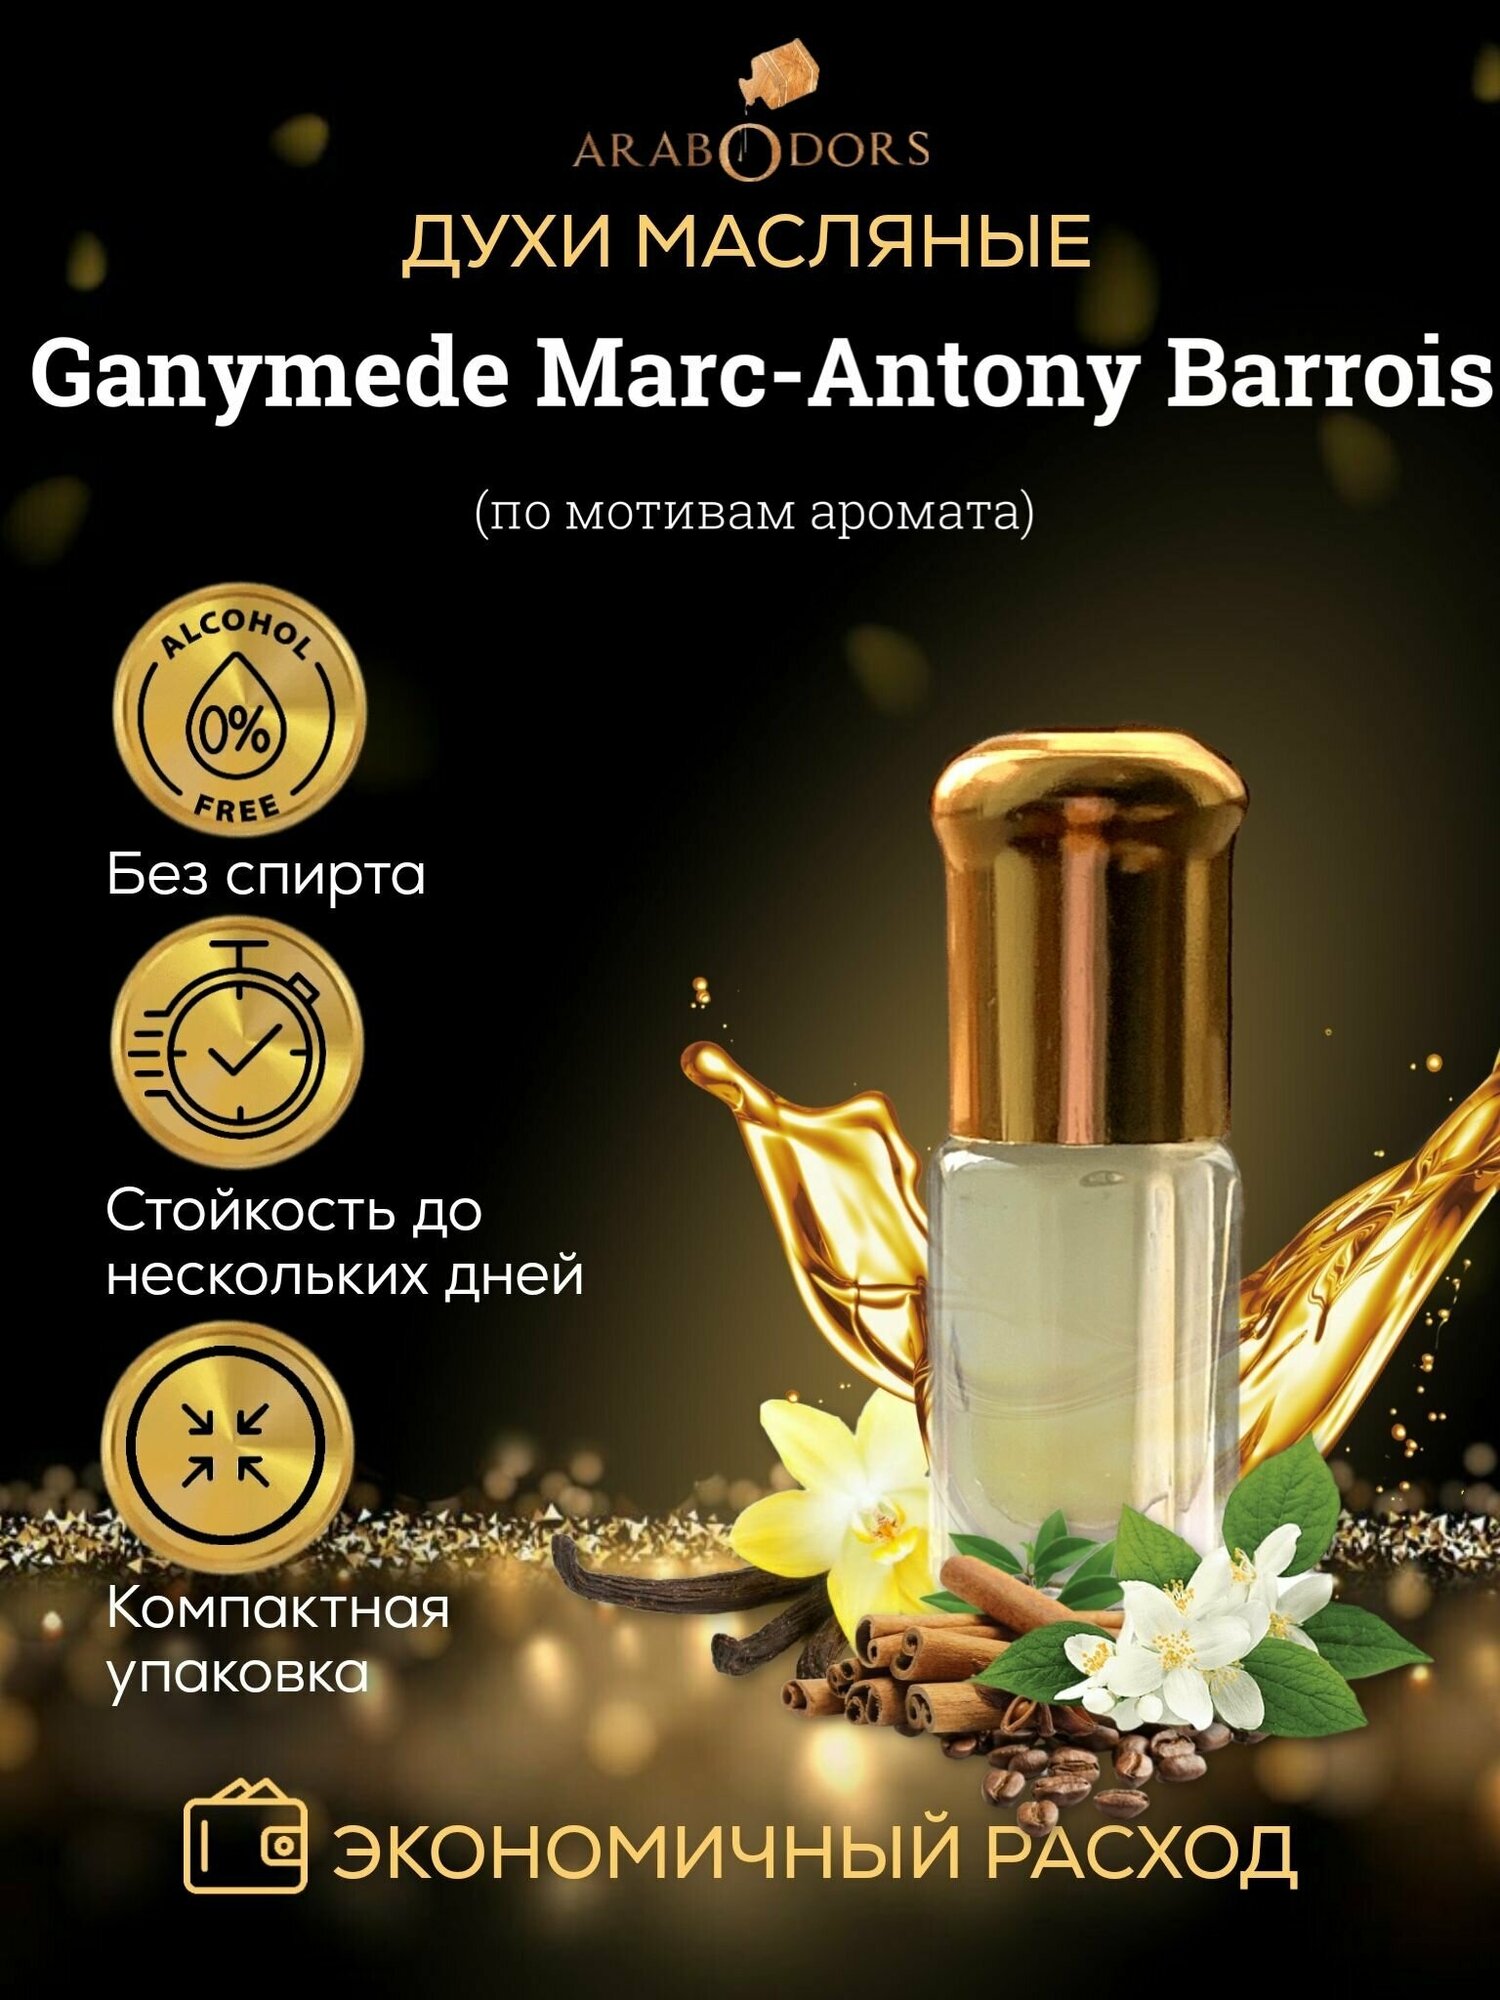 Arab Odors Ganymede Ганимед масляные духи без спирта 3 мл